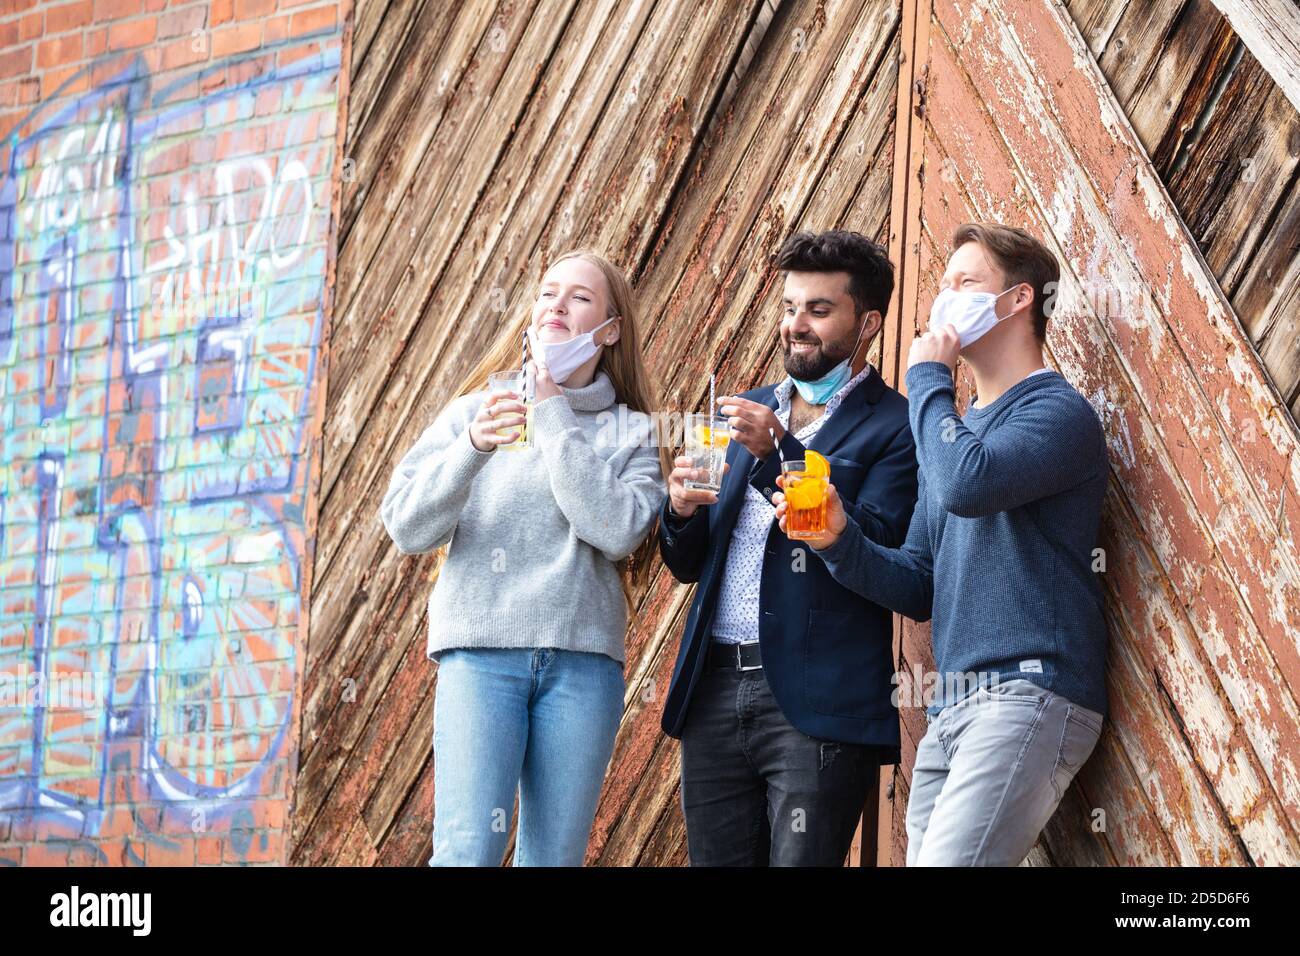 Gruppe junger Menschen zur Cornazeit mit Alltagsmaske, Freizeit in der Stadt mit Maske. Stehen mit Getränk im freien. Stock Photo